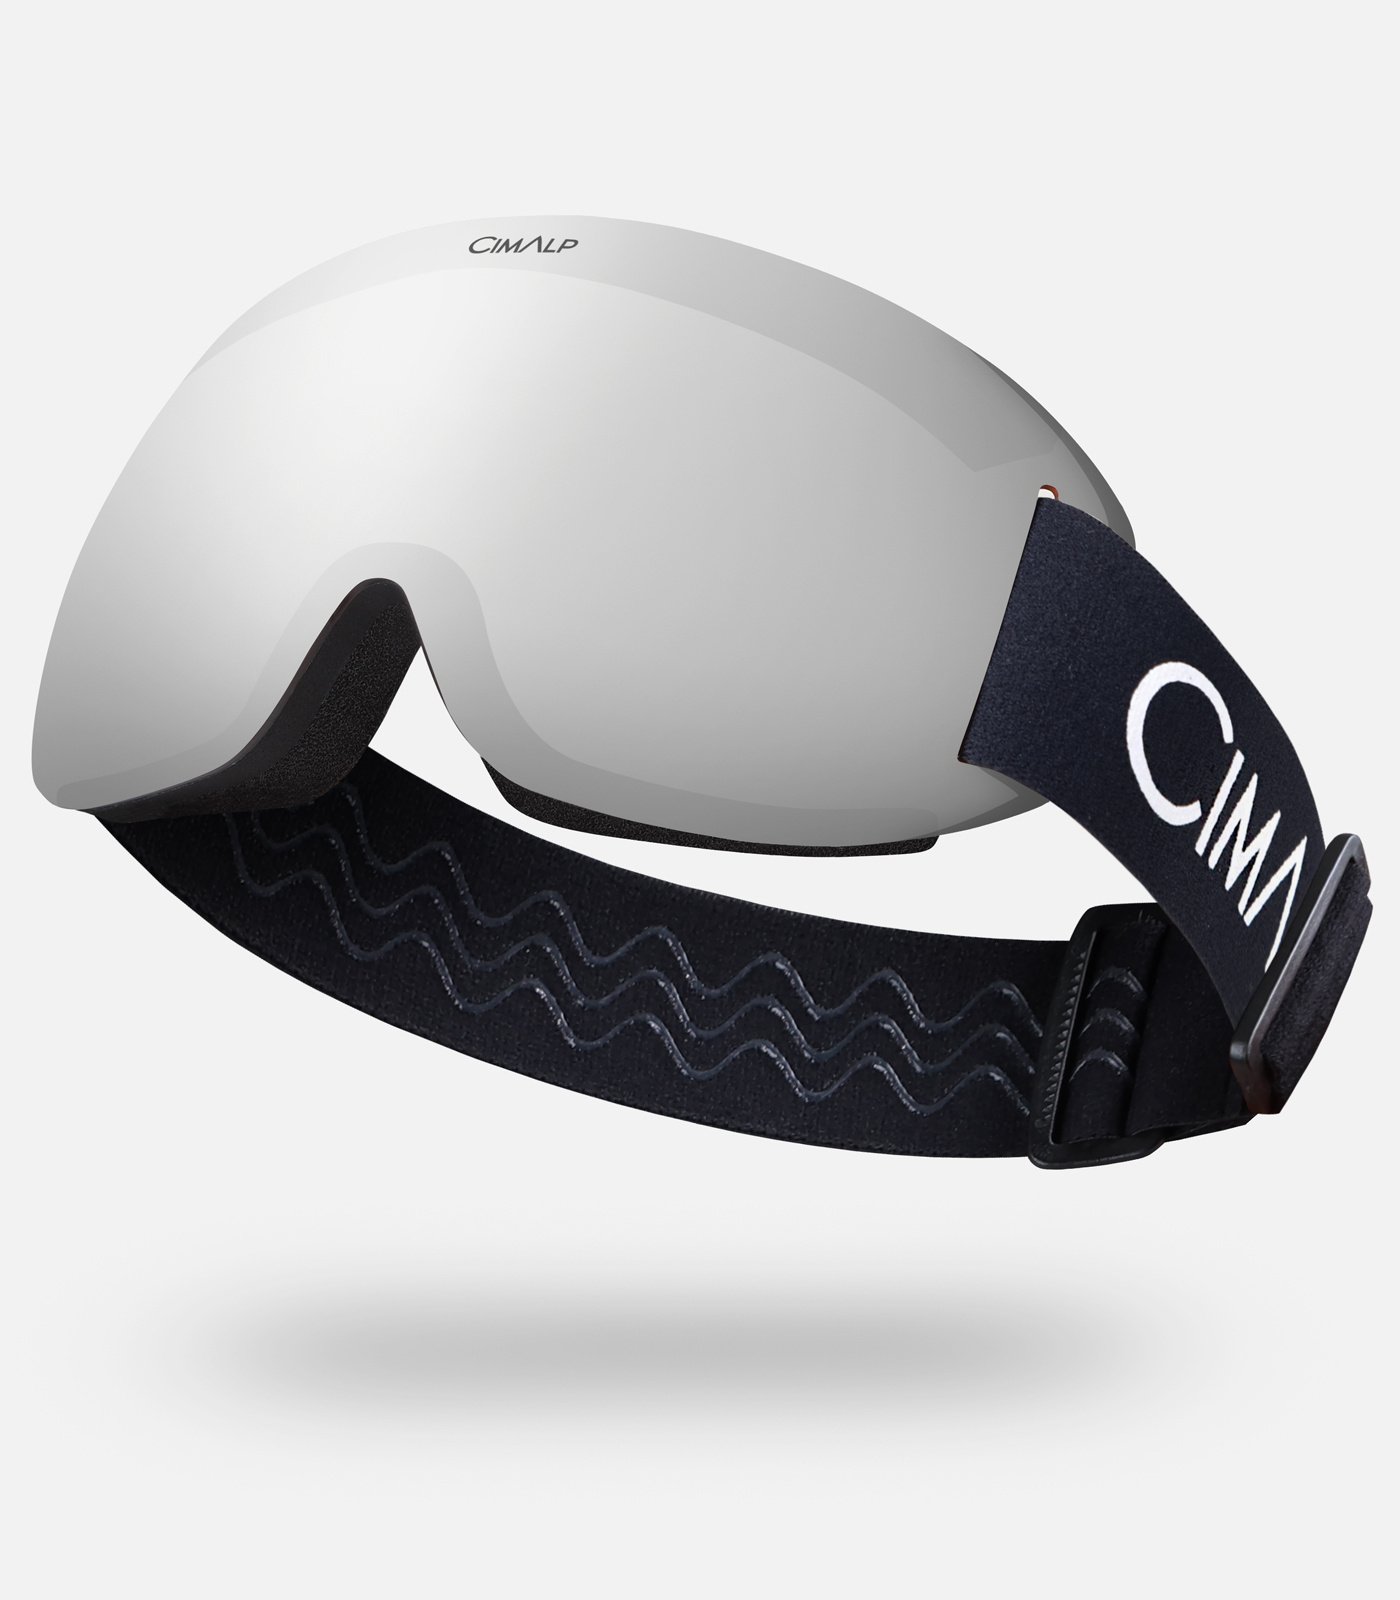 Gafas para parapente y esquí de montaña | Cimalp